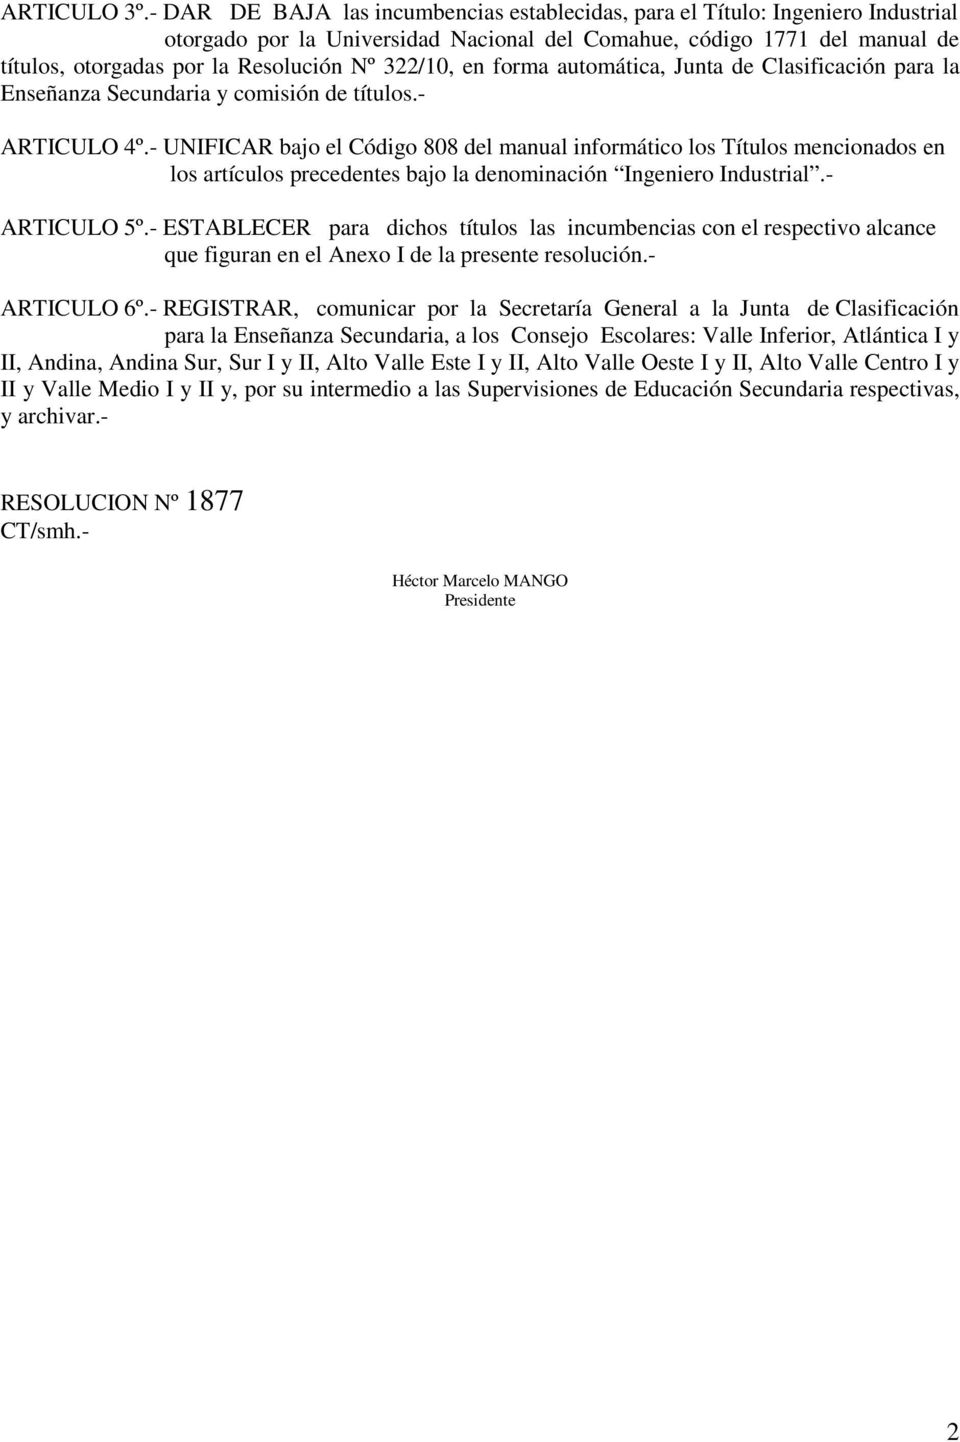 322/10, en forma automática, Junta de Clasificación para la Enseñanza Secundaria y comisión de títulos.- ARTICULO 4º.